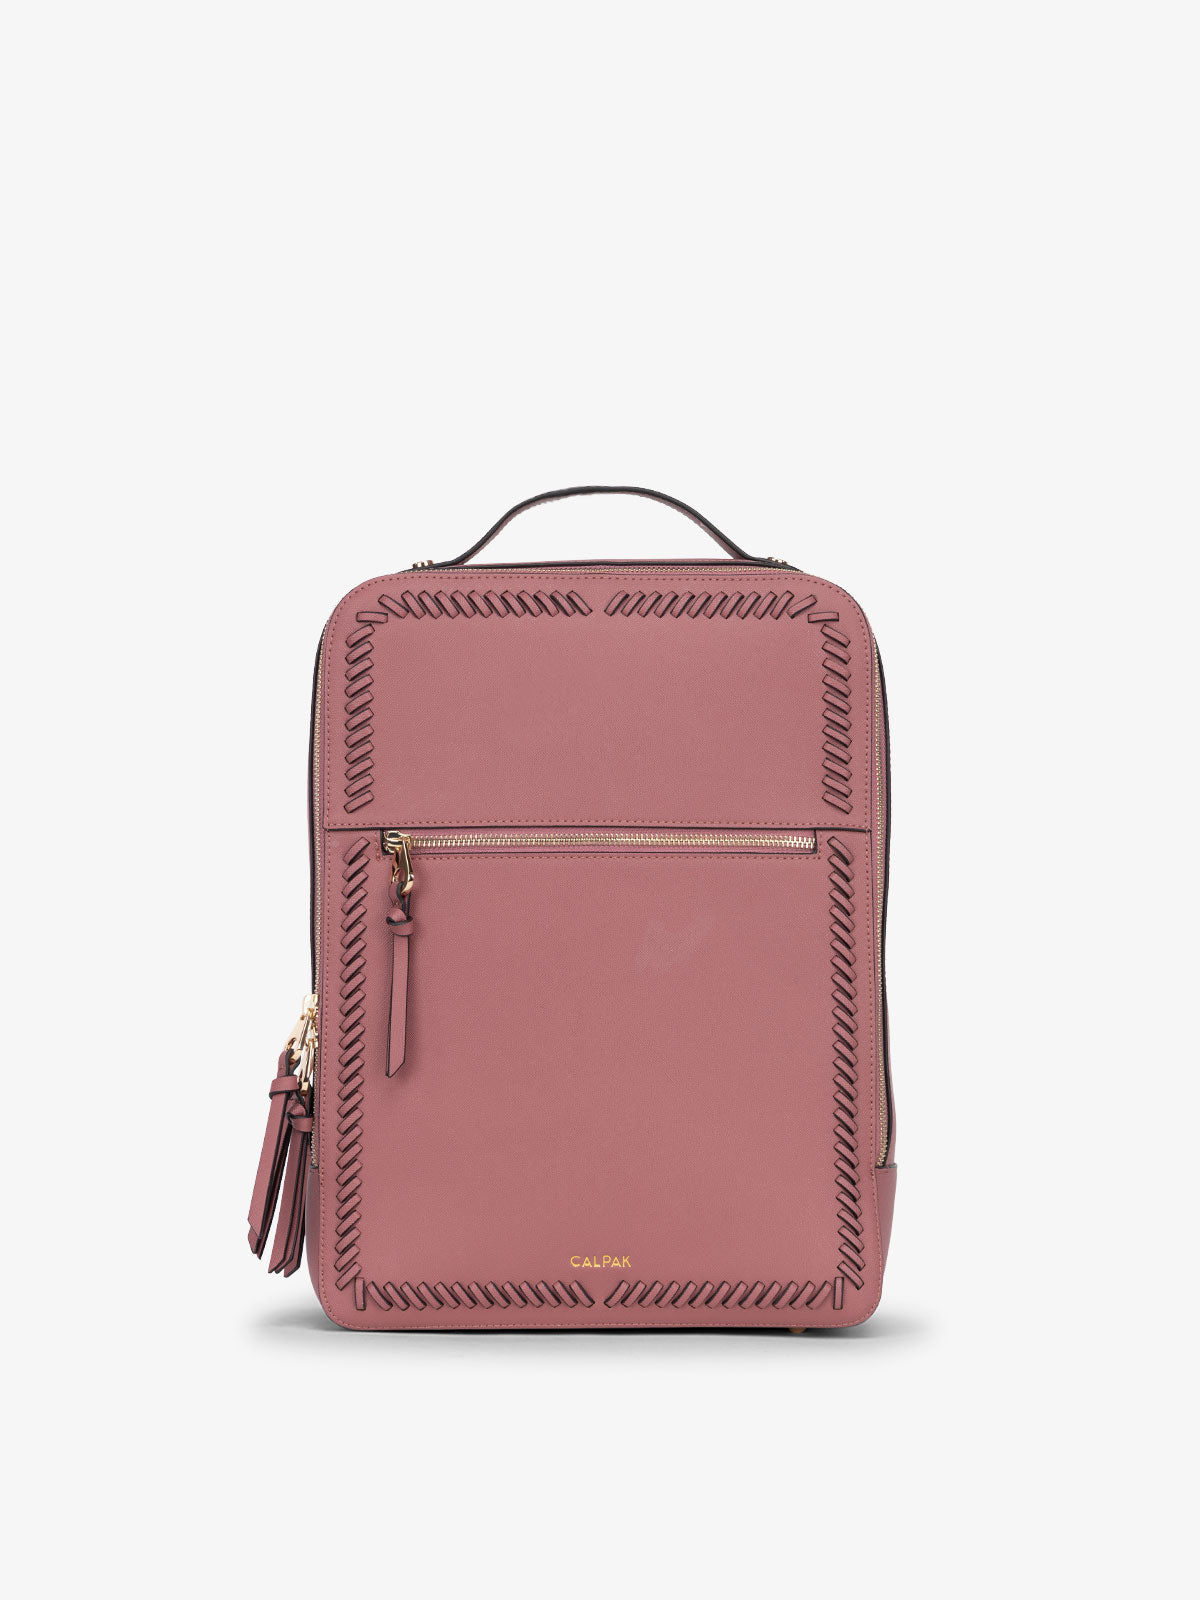 CALPAK Kaya Laptop Backpack for women in pink